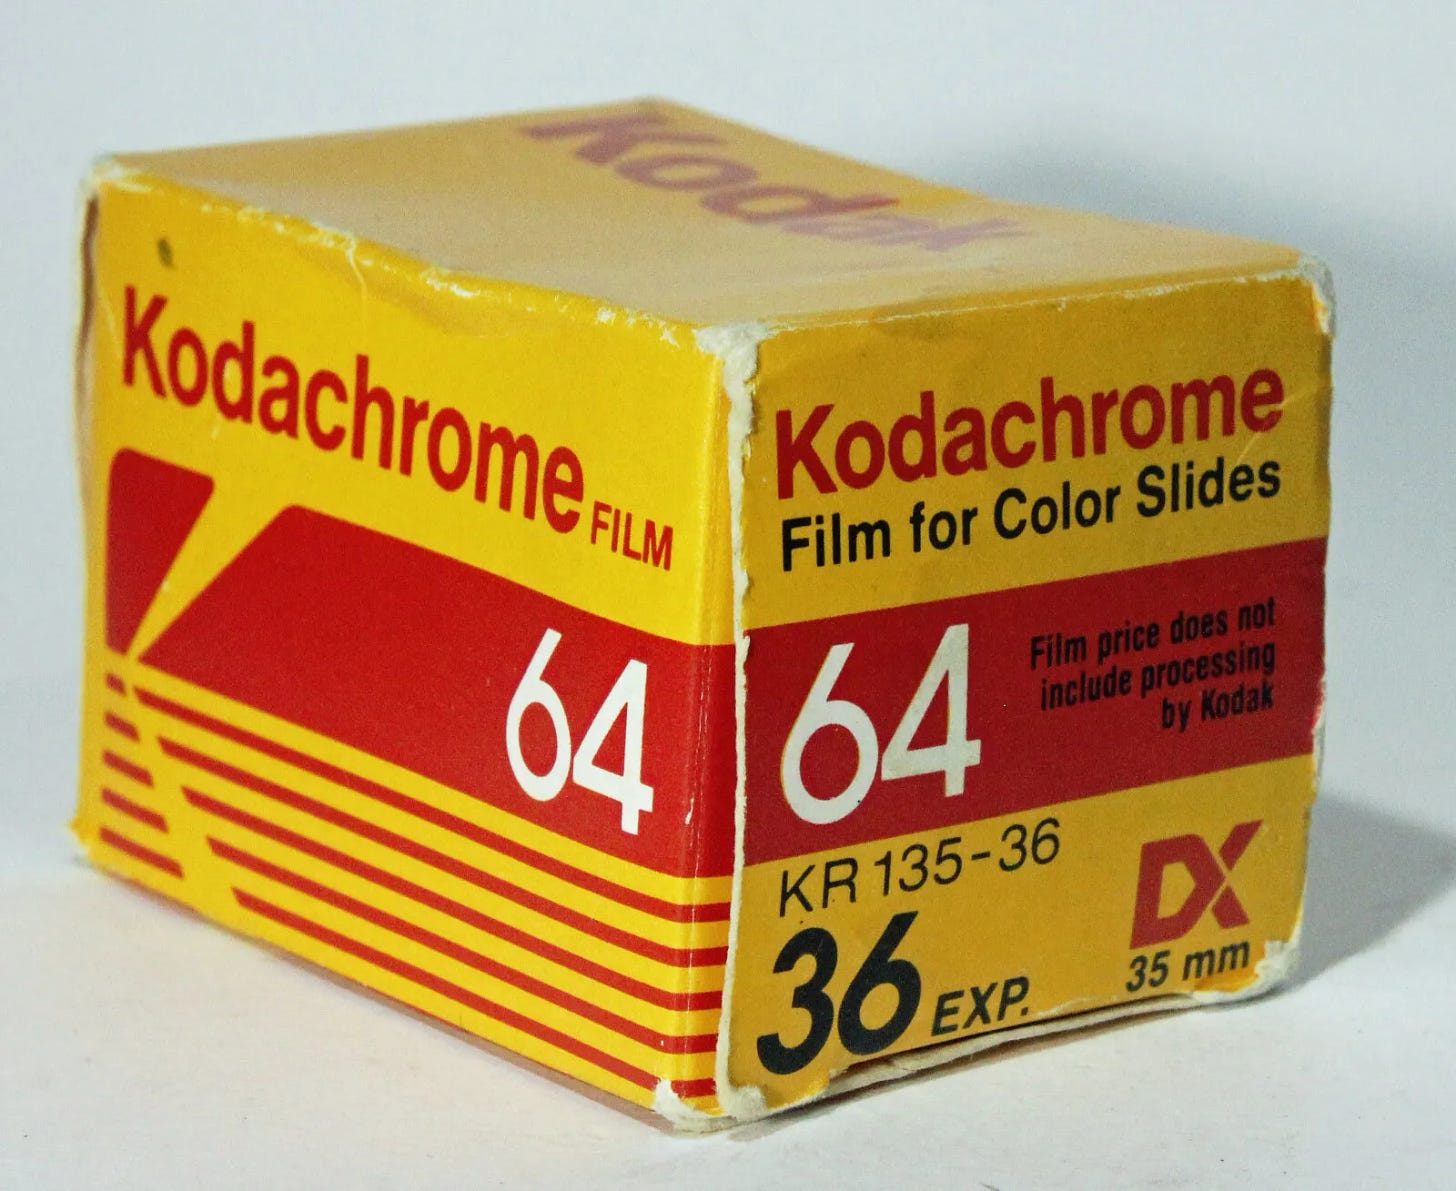 Kodak Kodachrome 64 36 exp Expired Slide Film 05/86 KR 135-36 - Picture 1 of 3